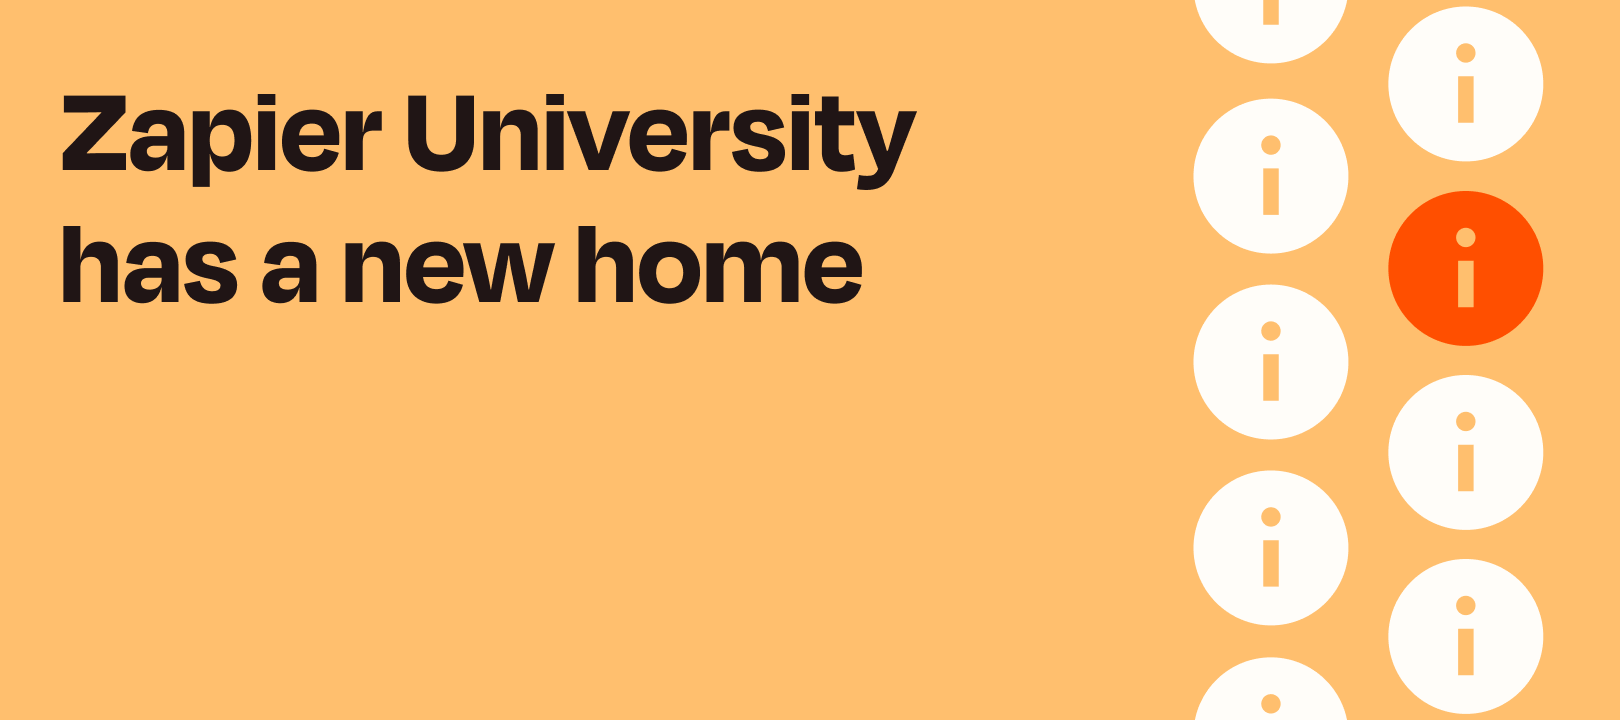 Zapier University has a new home on Zapier.com!